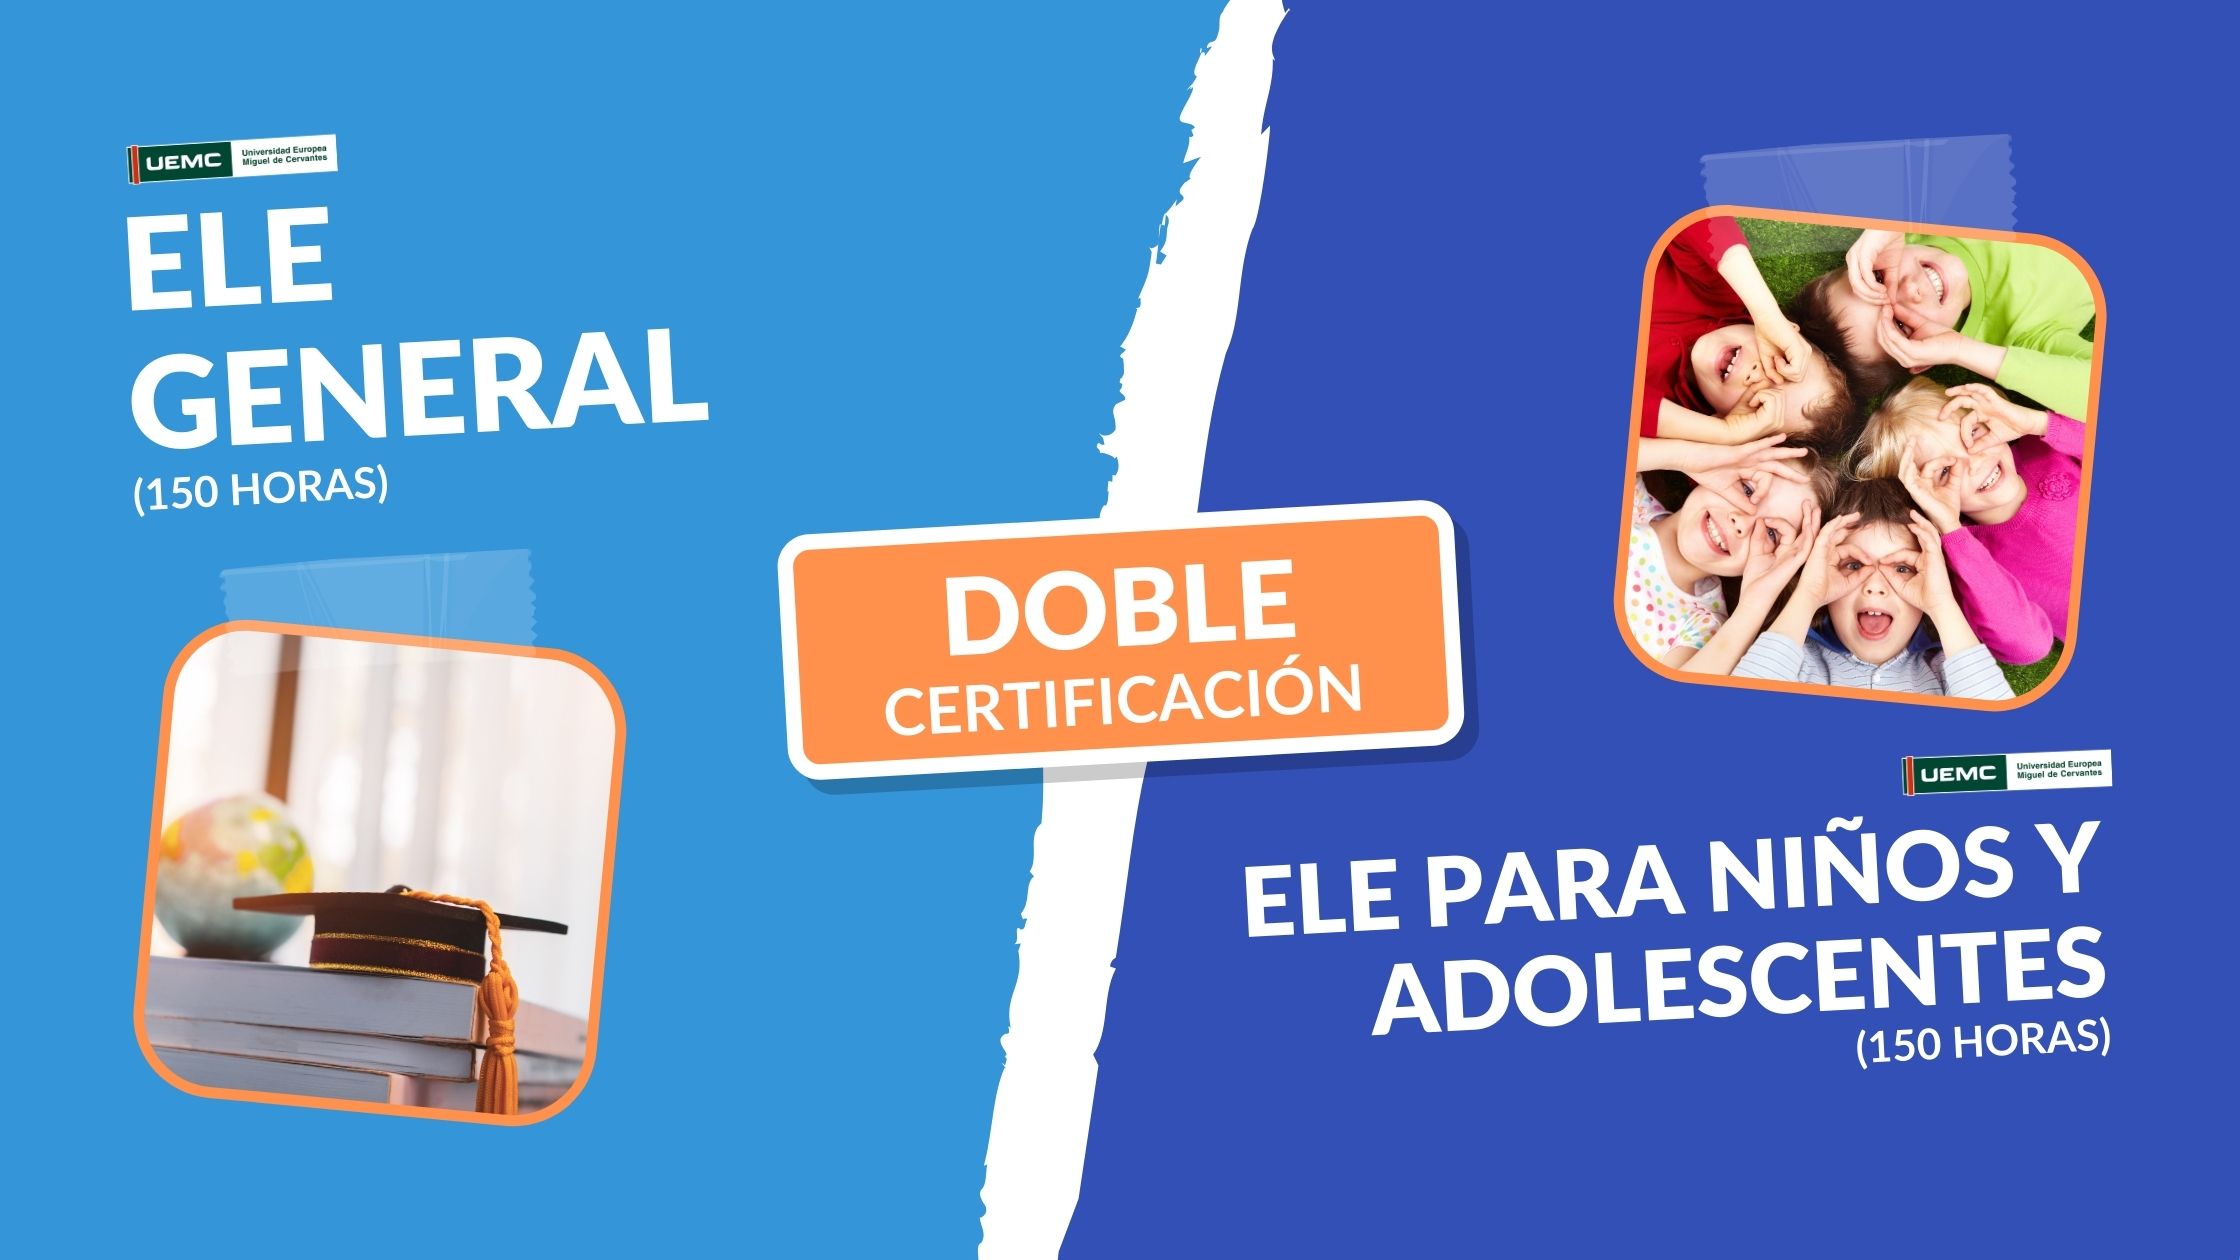 Doble Certificación:  Enseñanza de ELE General + Enseñanza de ELE a ninos y adolescentes